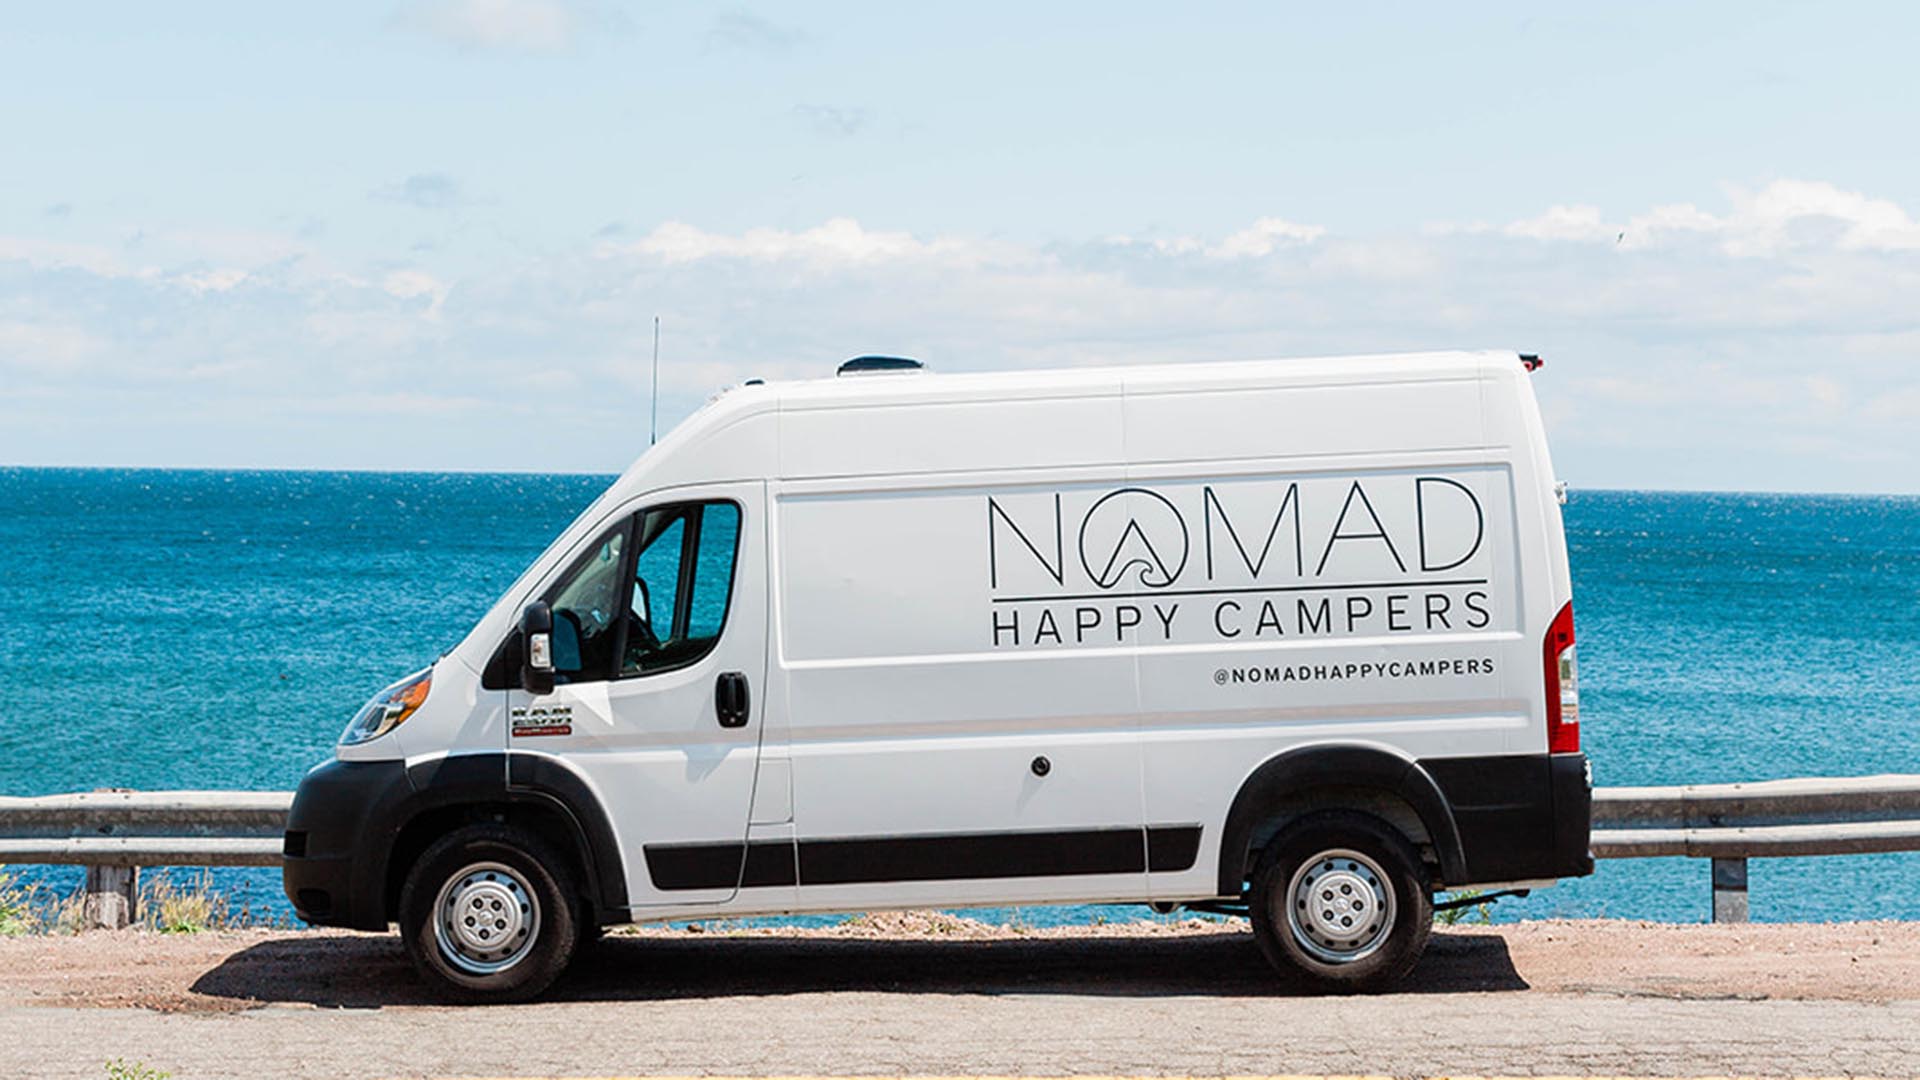 NOMAD Happy Campers Ltd.  Tourism Nova Scotia, Canada